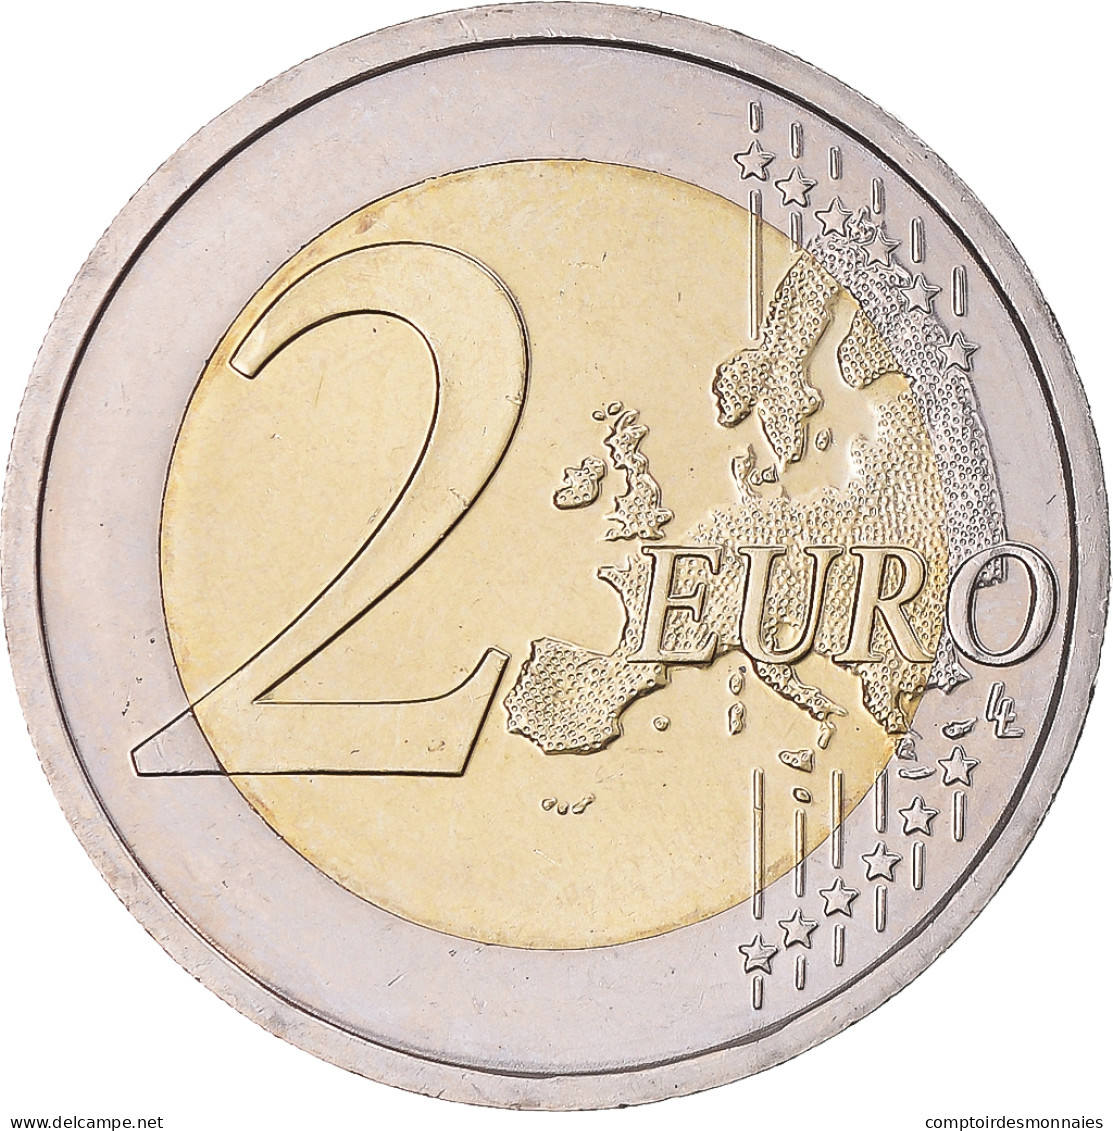 Slovaquie, 2 Euro, Université Istropolitana, 2017, Kremnica, SPL - Slovaquie